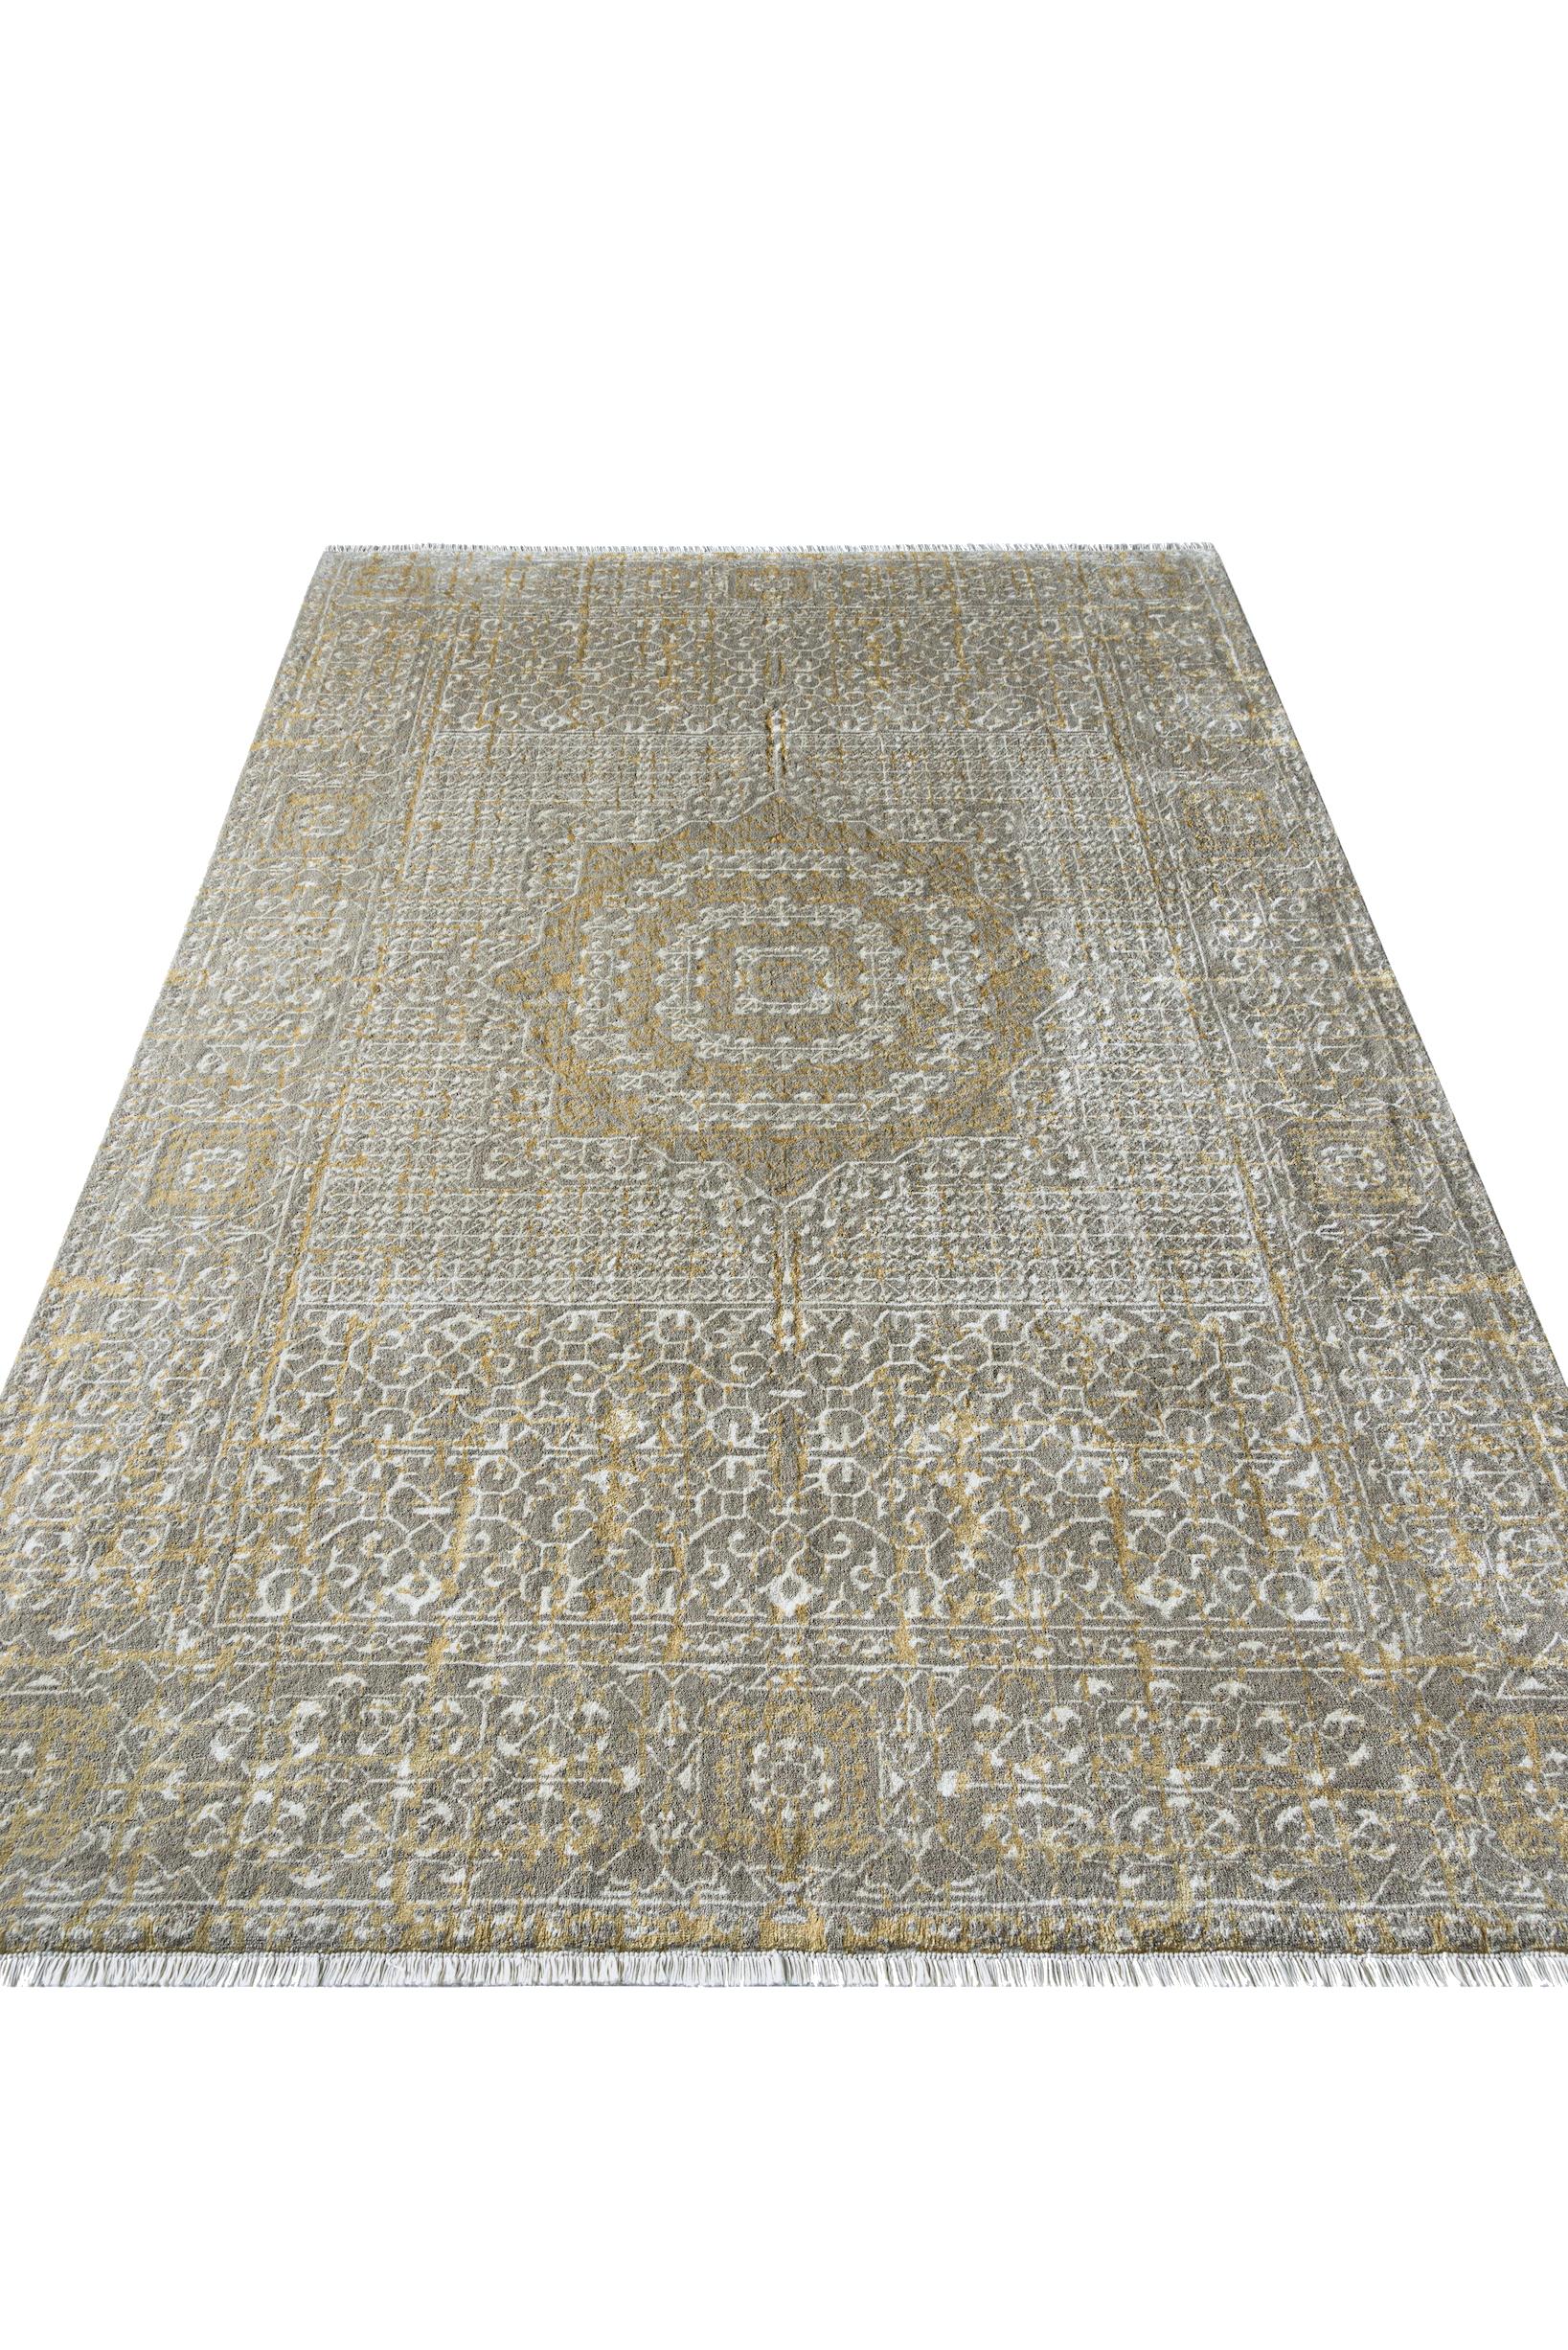 A propos du tapis :
Il s'agit d'un tapis noué à la main avec 160 000 nœuds par mètre carré dans une construction à double nœud. Il est composé d'un fil de dessus en laine égyptienne avec des incrustations de soie de bambou, et d'une chaîne et d'une